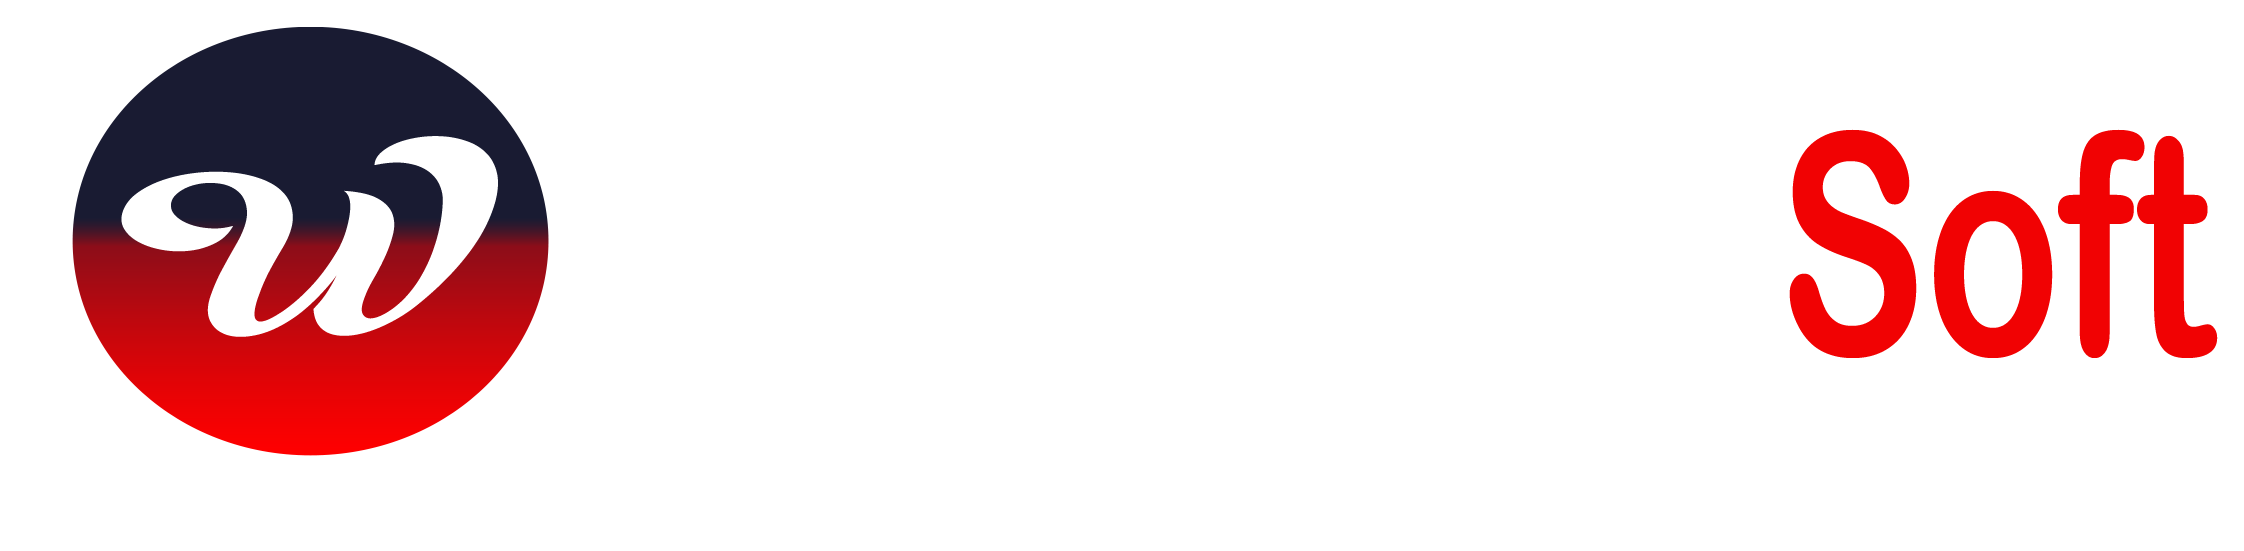 WebExpert Soft Logo Light